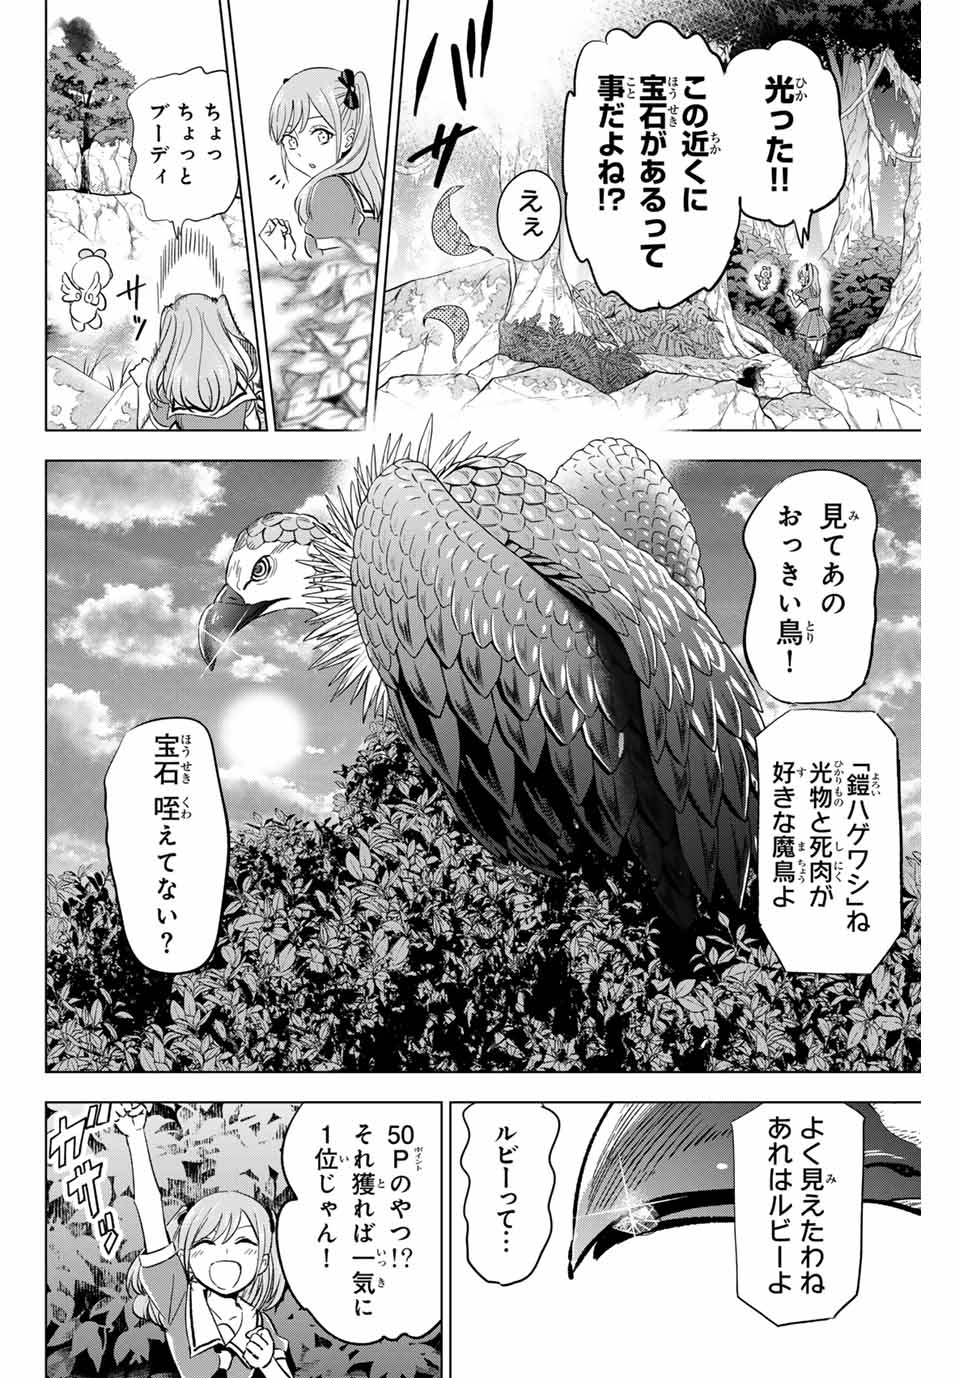 Kuroneko to Majo no Kyoushitsu - Chapter 49 - Page 8